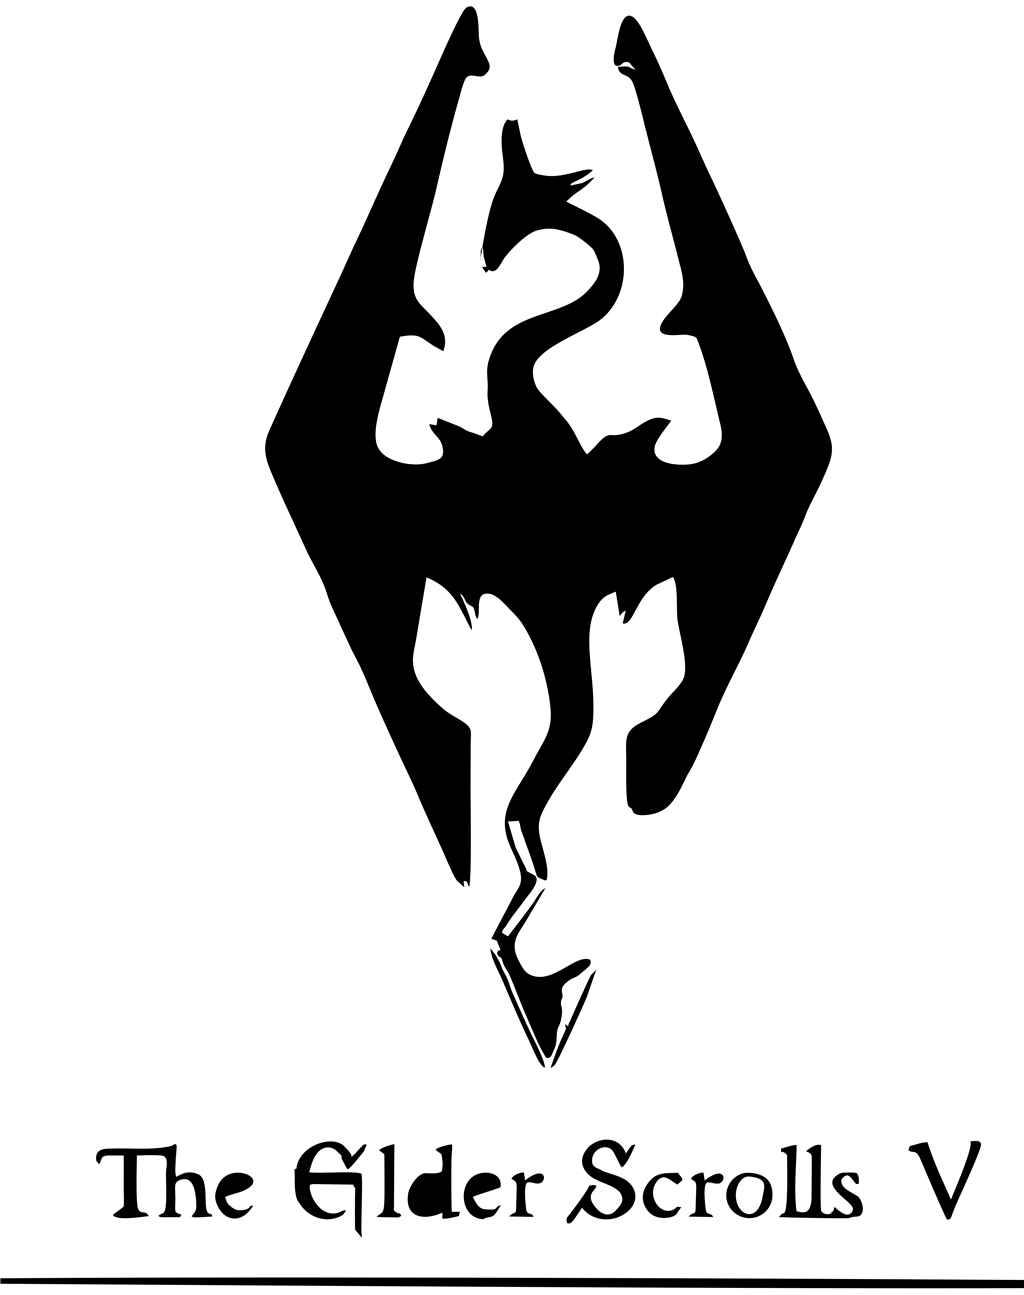 Skyrim logotype, transparent .png, medium, large